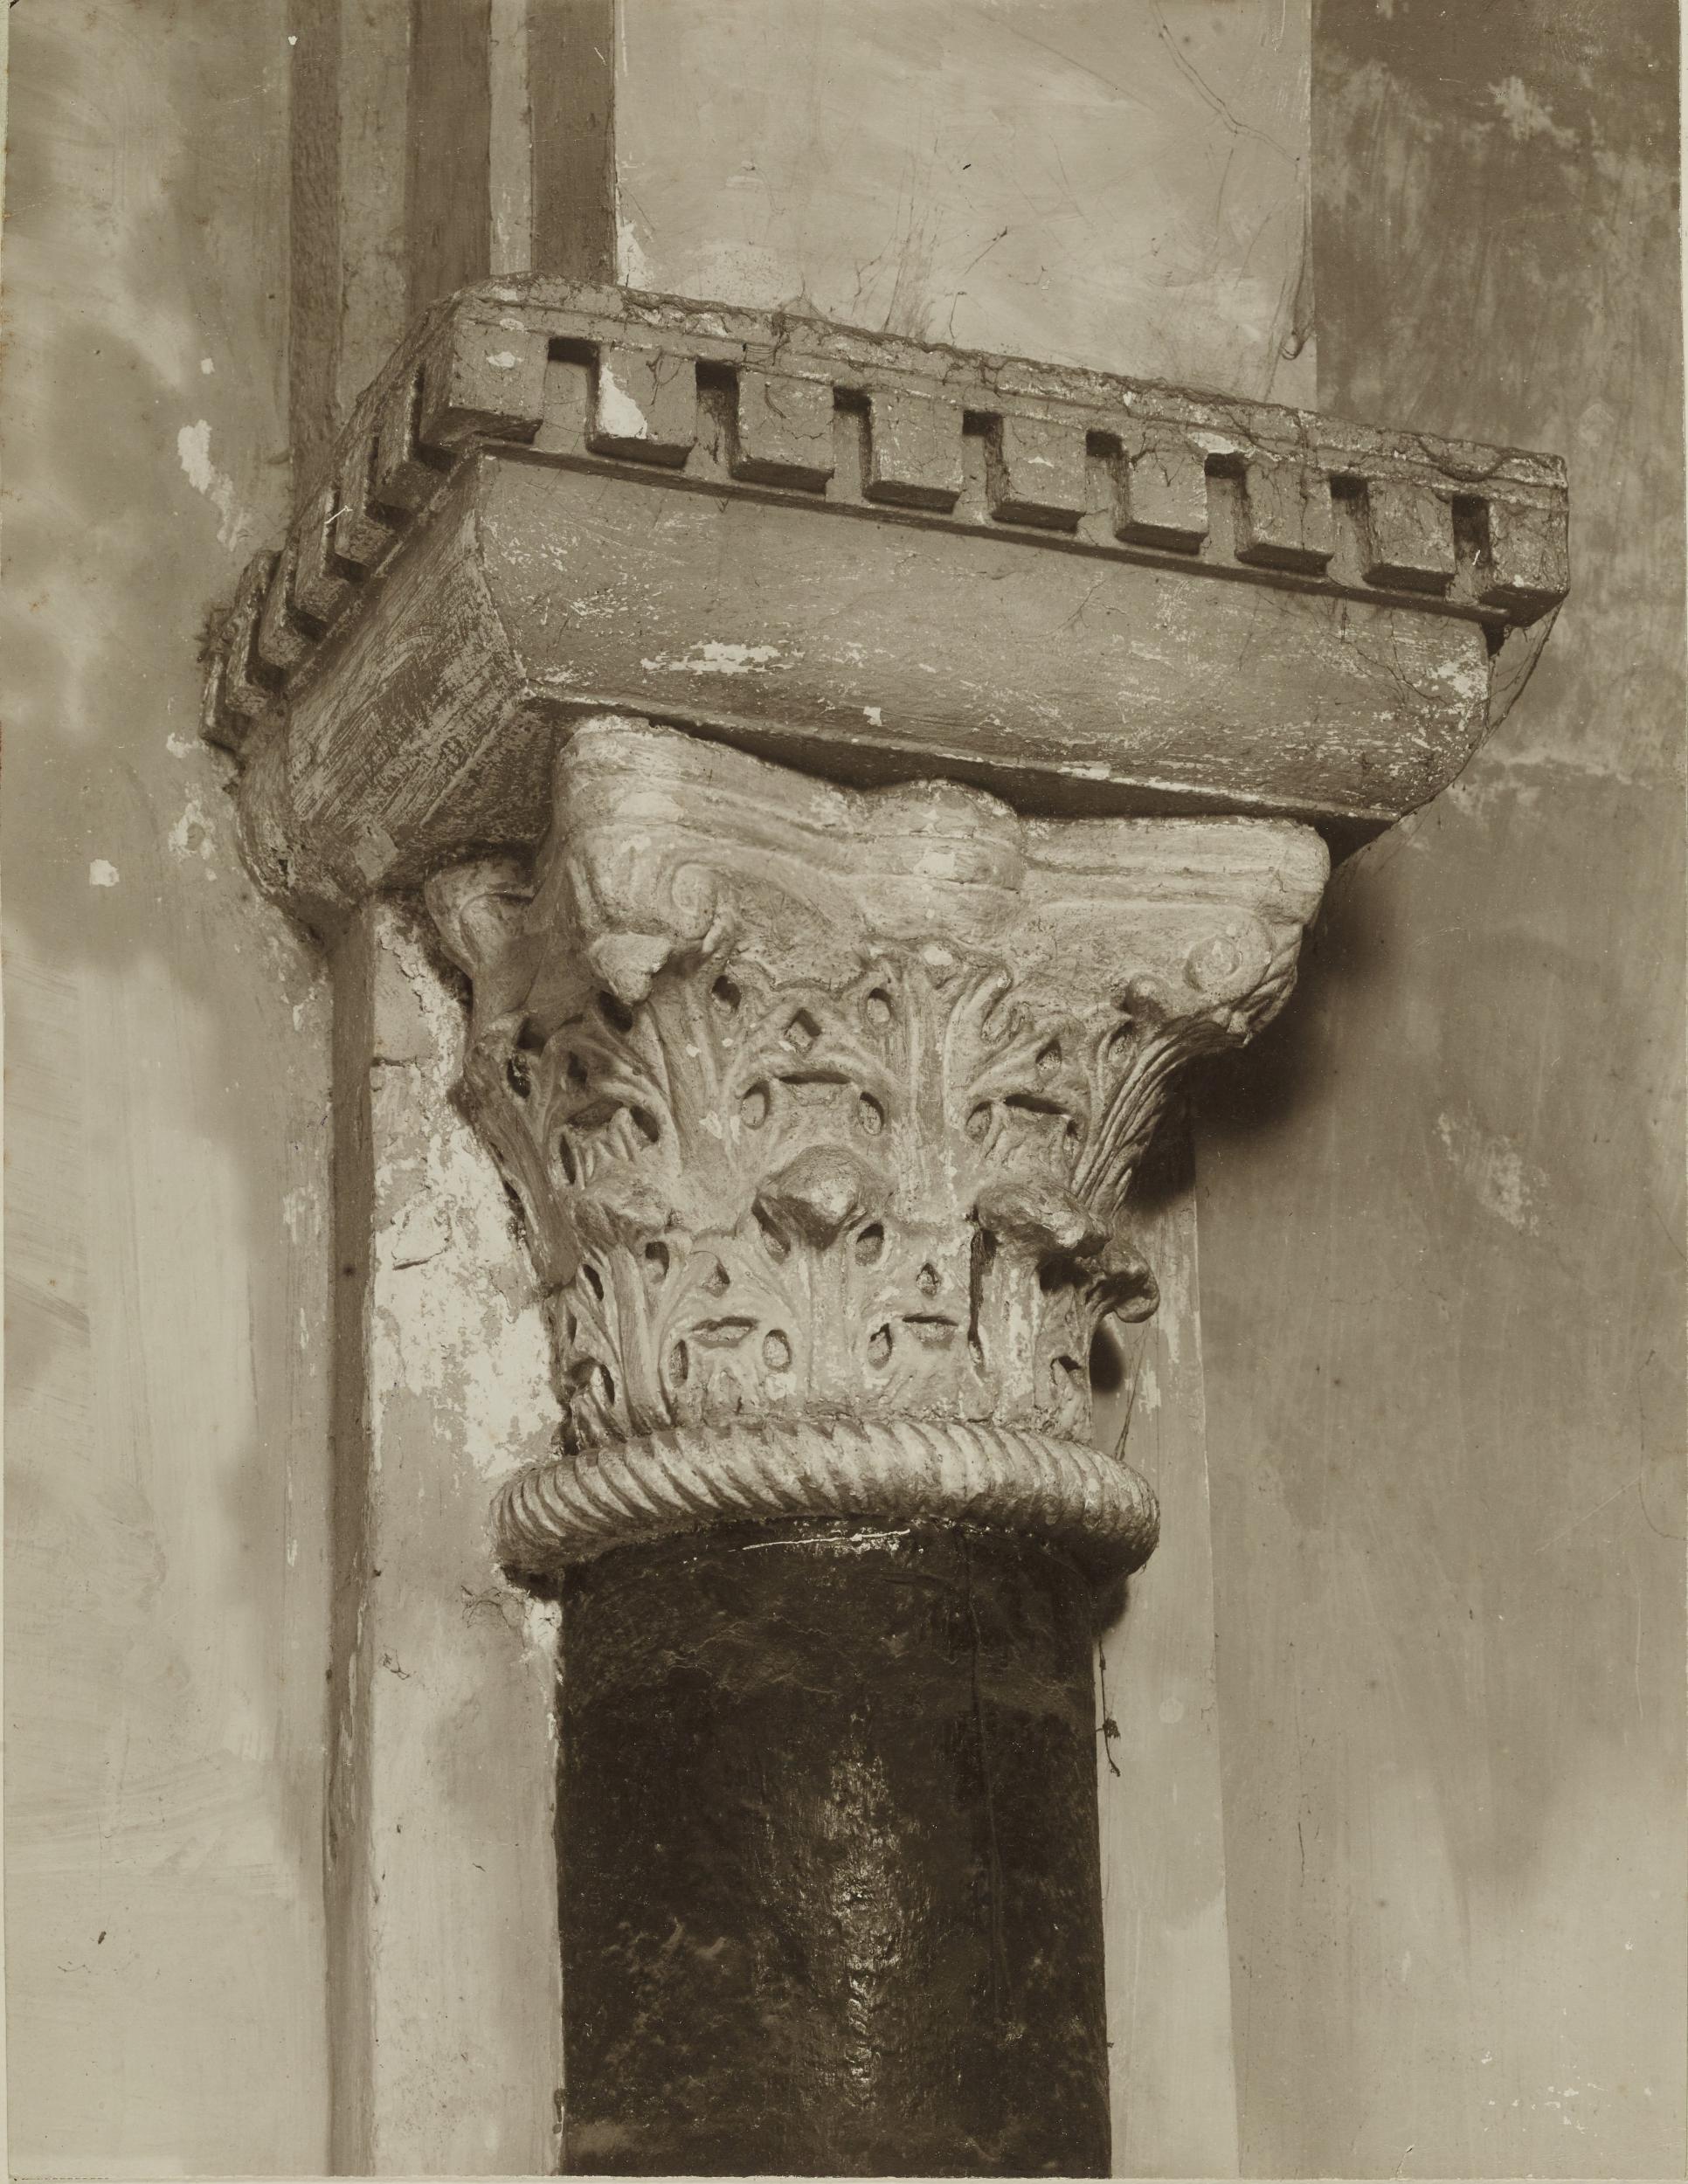 Fotografo non identificato, Bari - Basilica S. Nicola, capitello, 1901-1950, gelatina ai sali d'argento/carta, MPI6023088